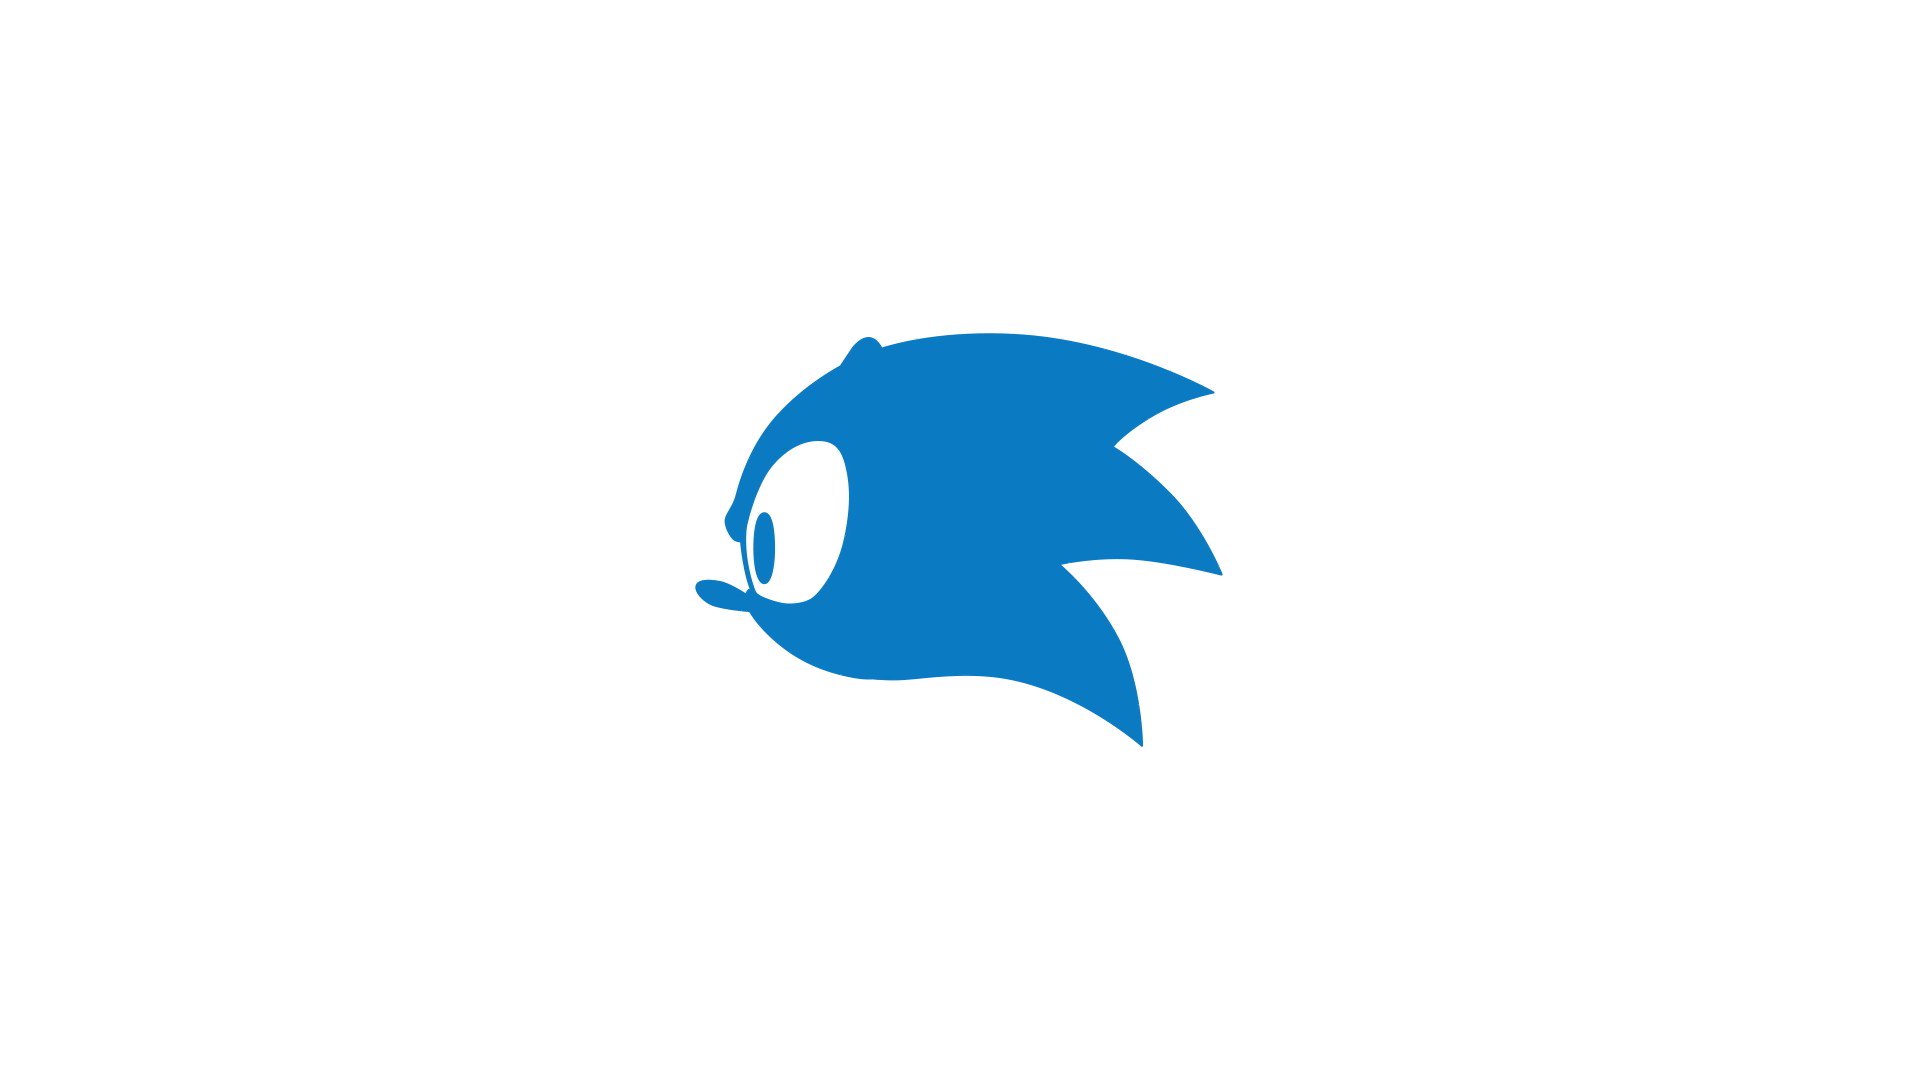 Sonic the Hedgehog on X: Amizade é sobre compartilhar experiências. Na  história em quadrinhos Fast Friends Forever de @TerminalMontage, Sonic  convida Tails para se divertirem juntos.  / X